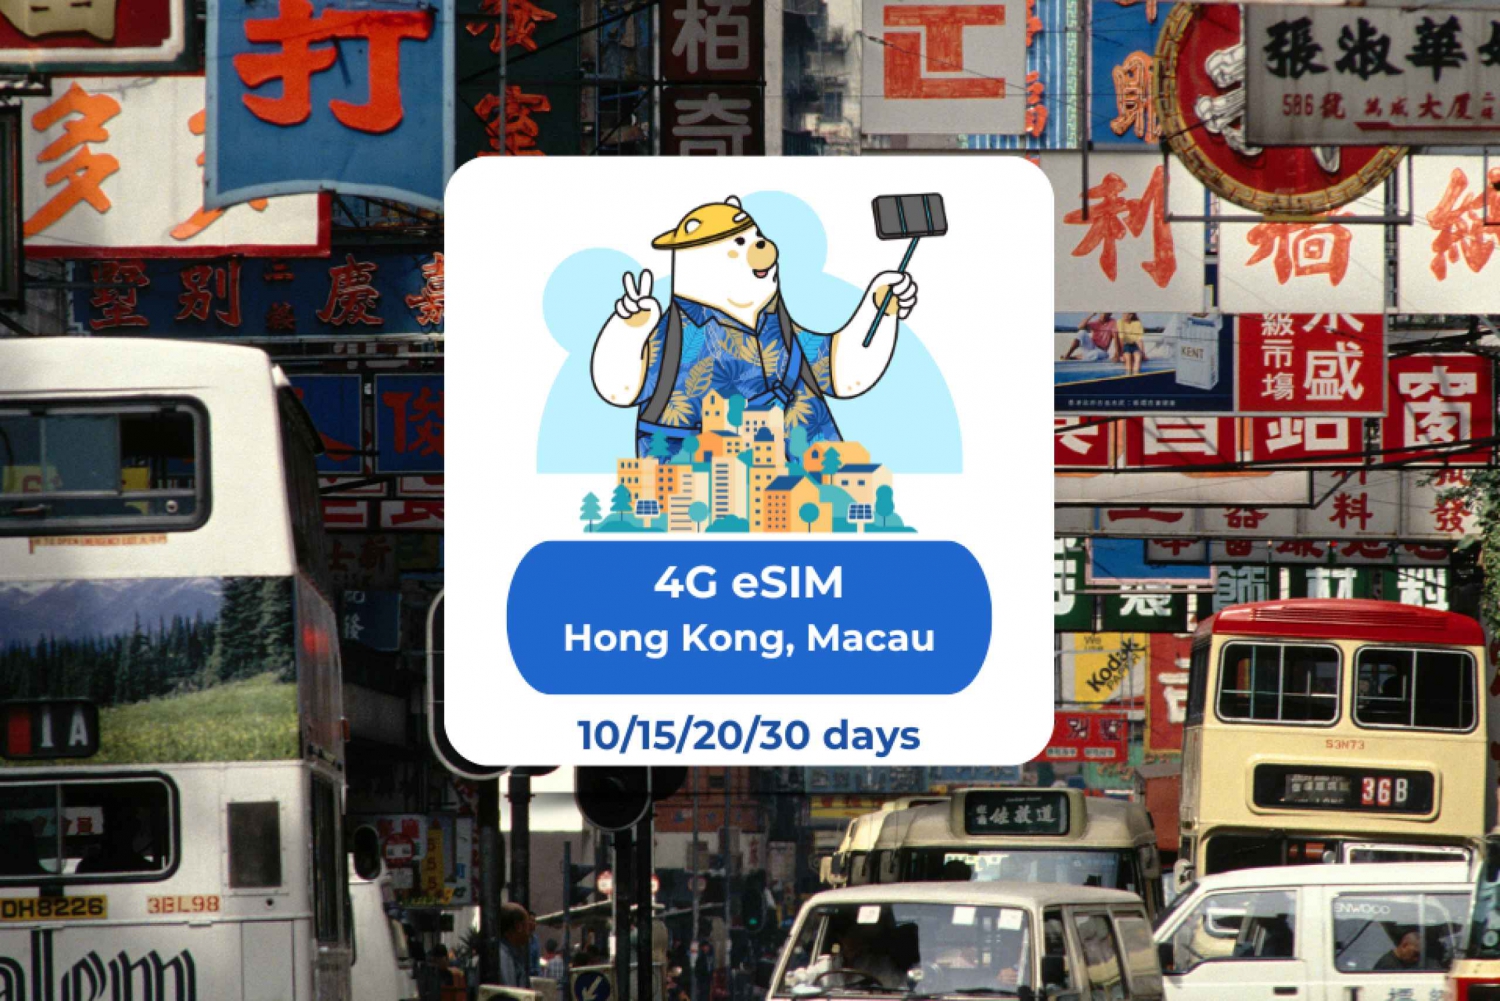 Hong Kong - Macao: Esim-datapakker for 10/15/20/30 dager